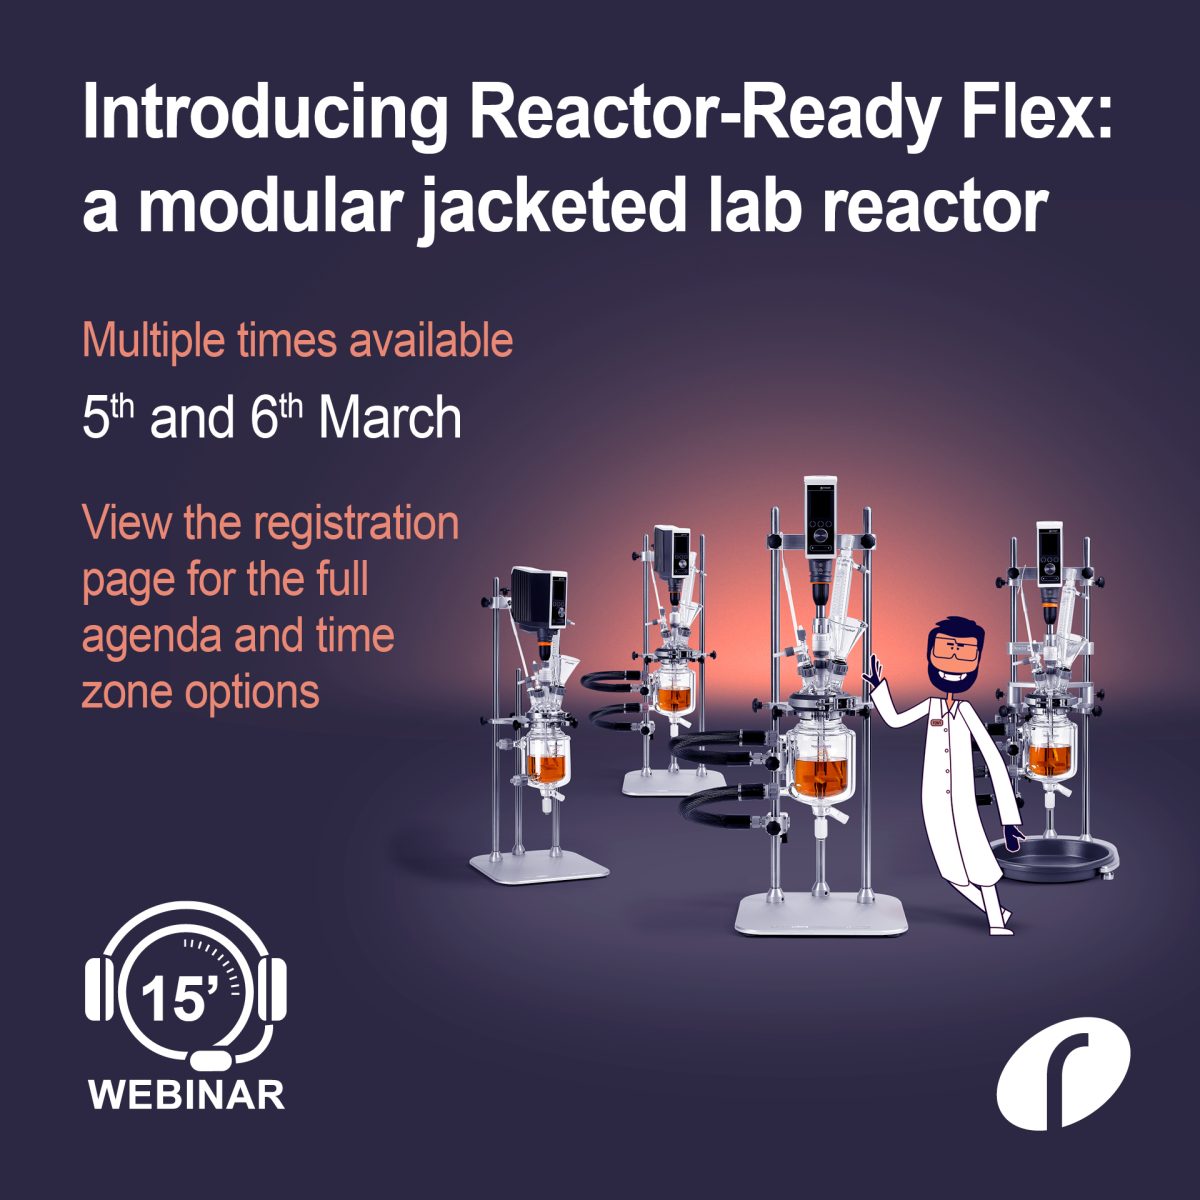 IGZ Instruments, Webinar – Le nouveau Reactor-Ready Flex de Radleys